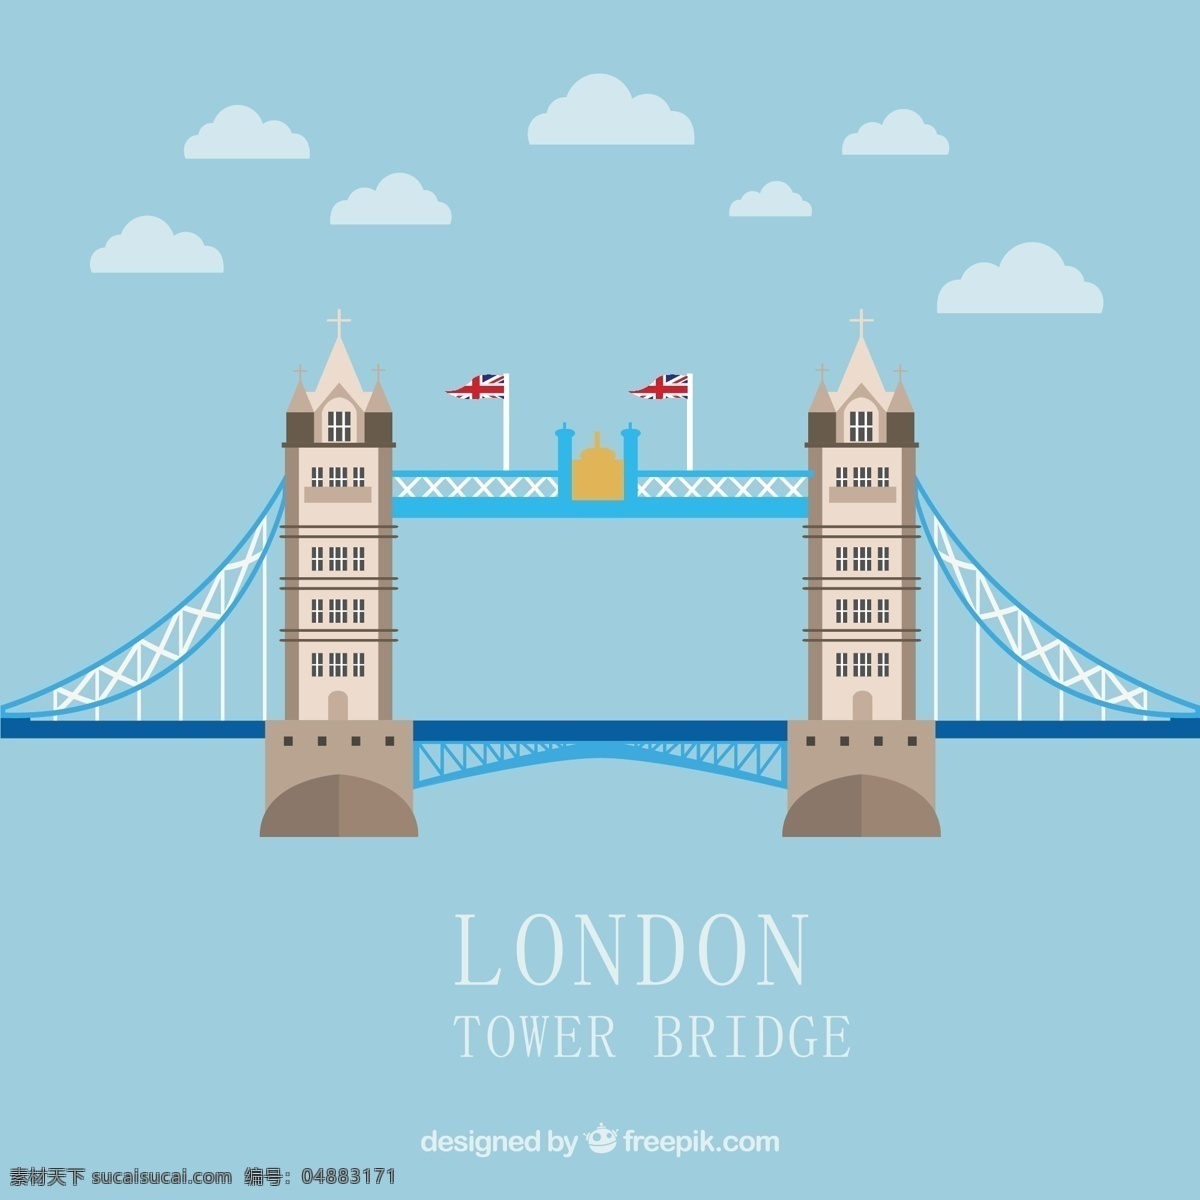 伦敦 塔桥 建筑 矢量图 云朵 英国国旗 英国 伦敦塔桥 风景 建筑矢量素材 环境设计 建筑设计